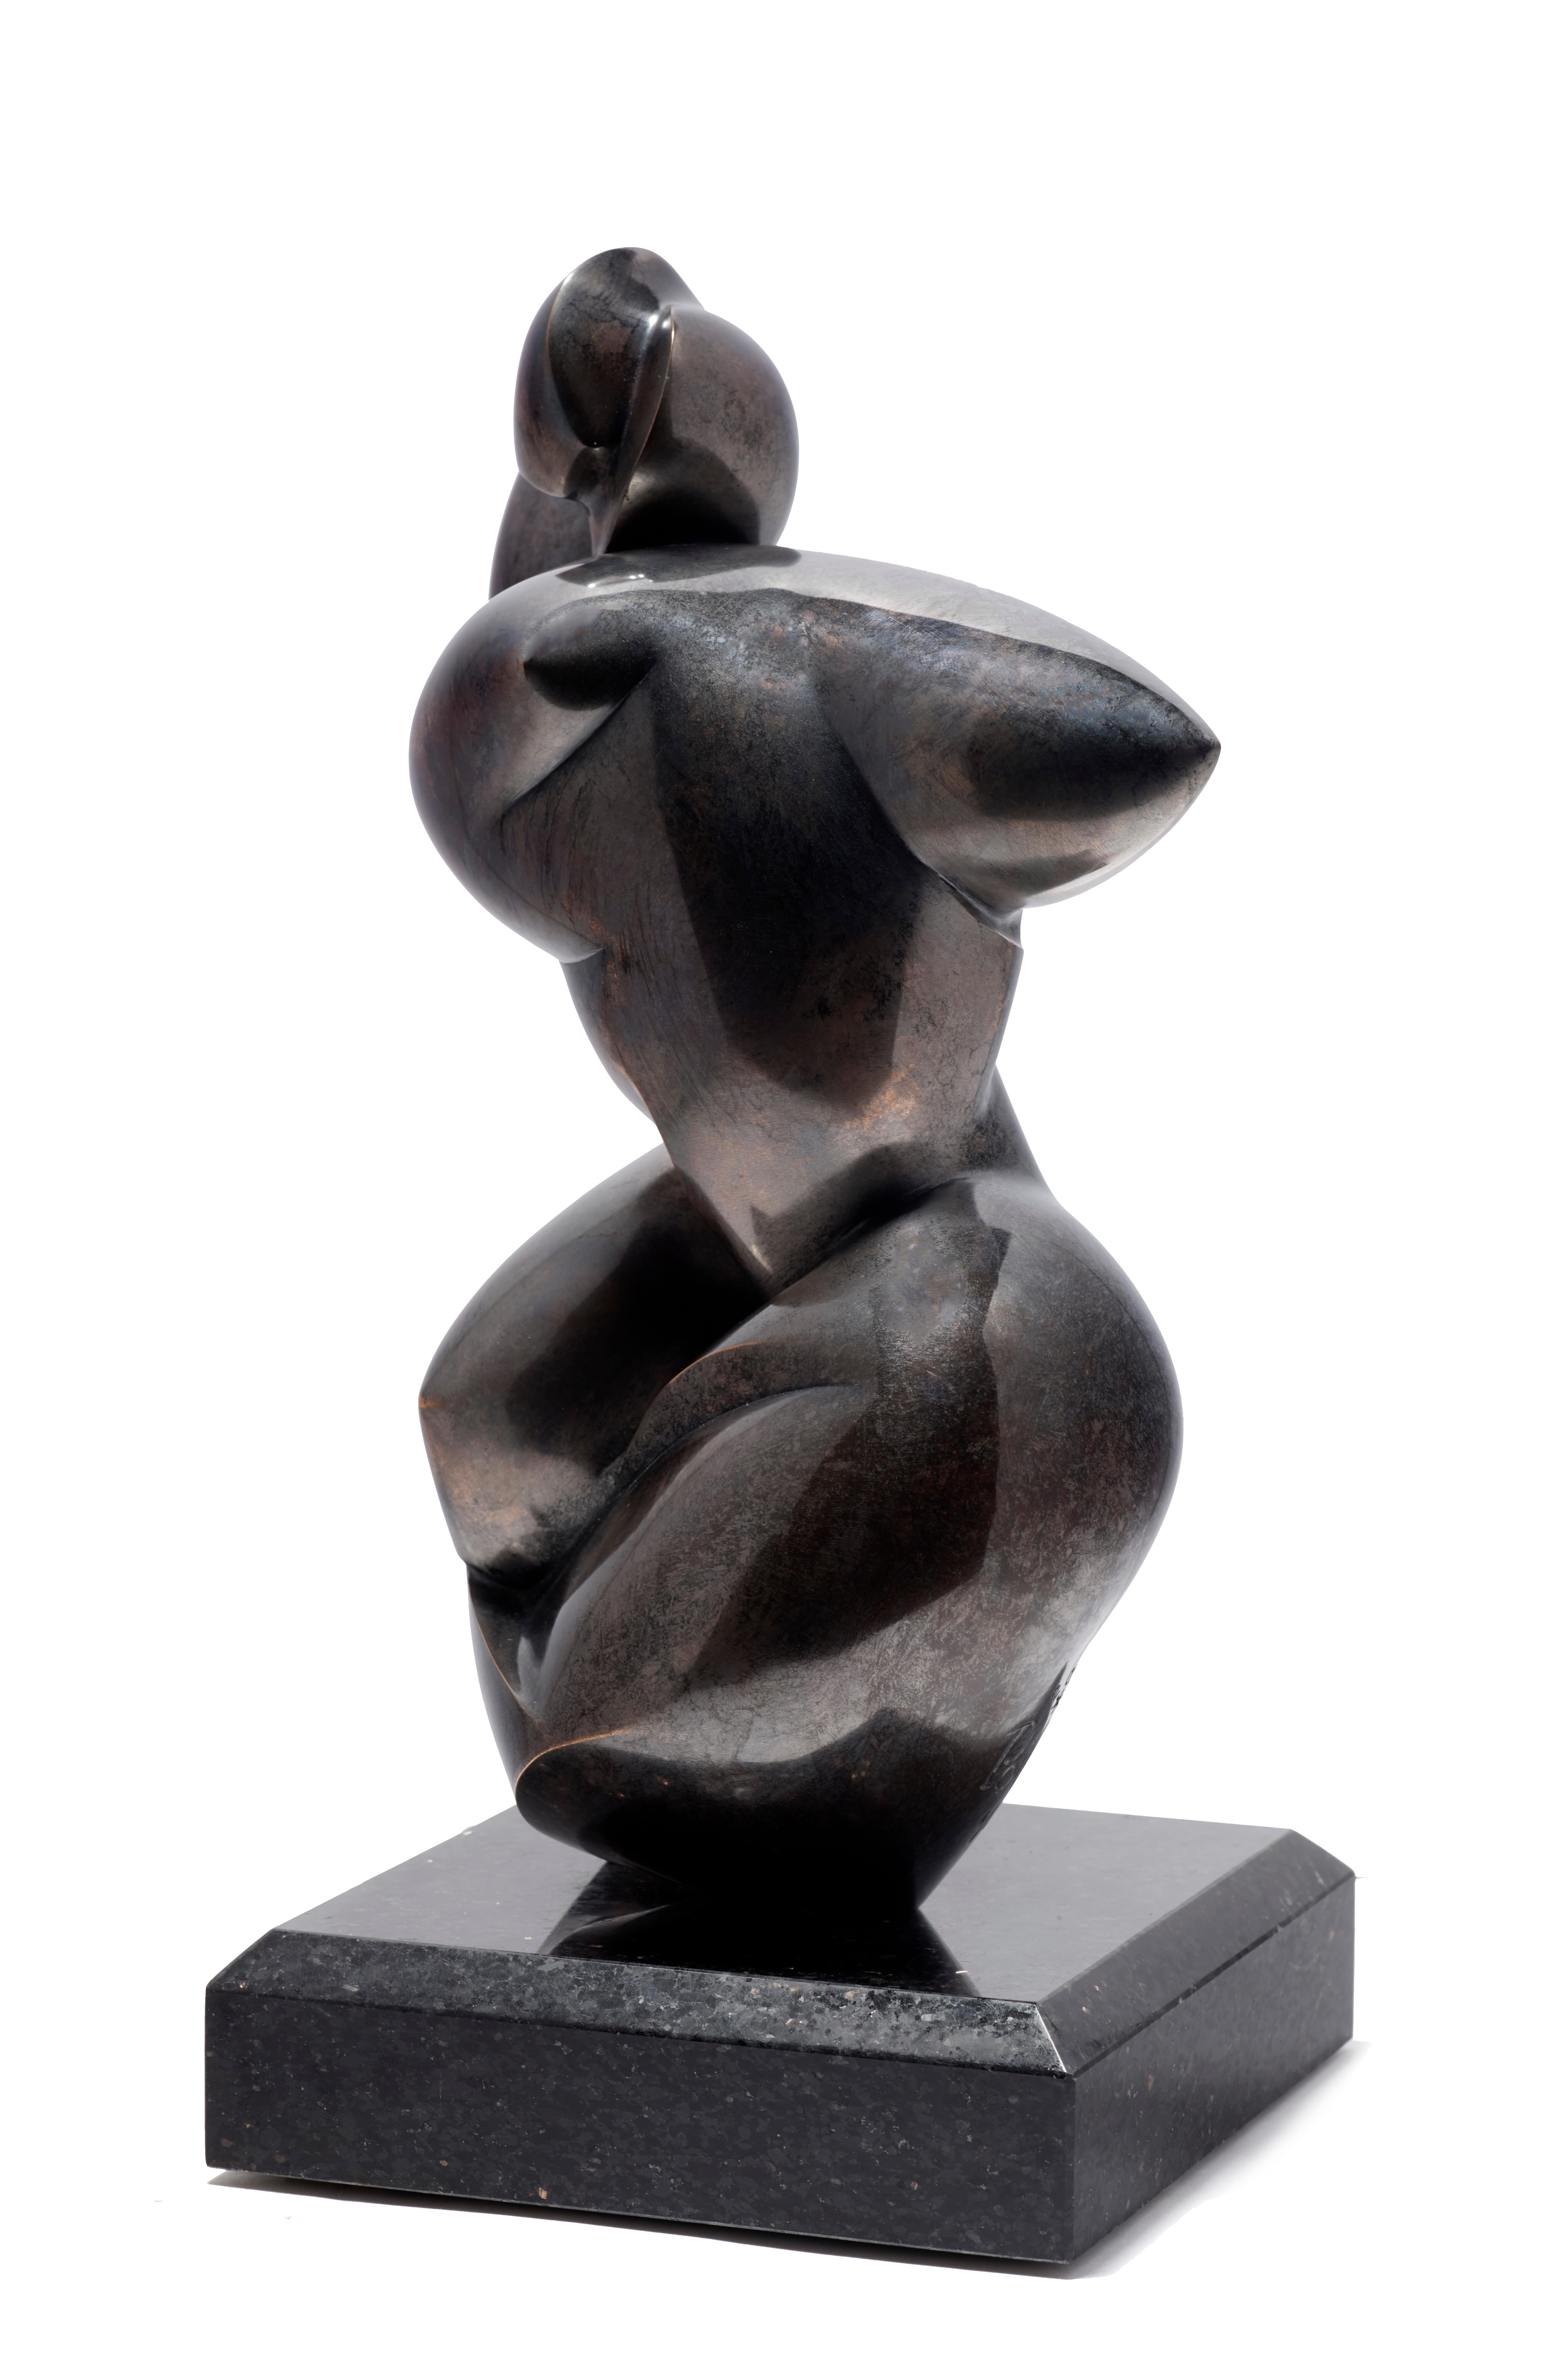 Naomiblique - Sculpture by Dominique Polles 